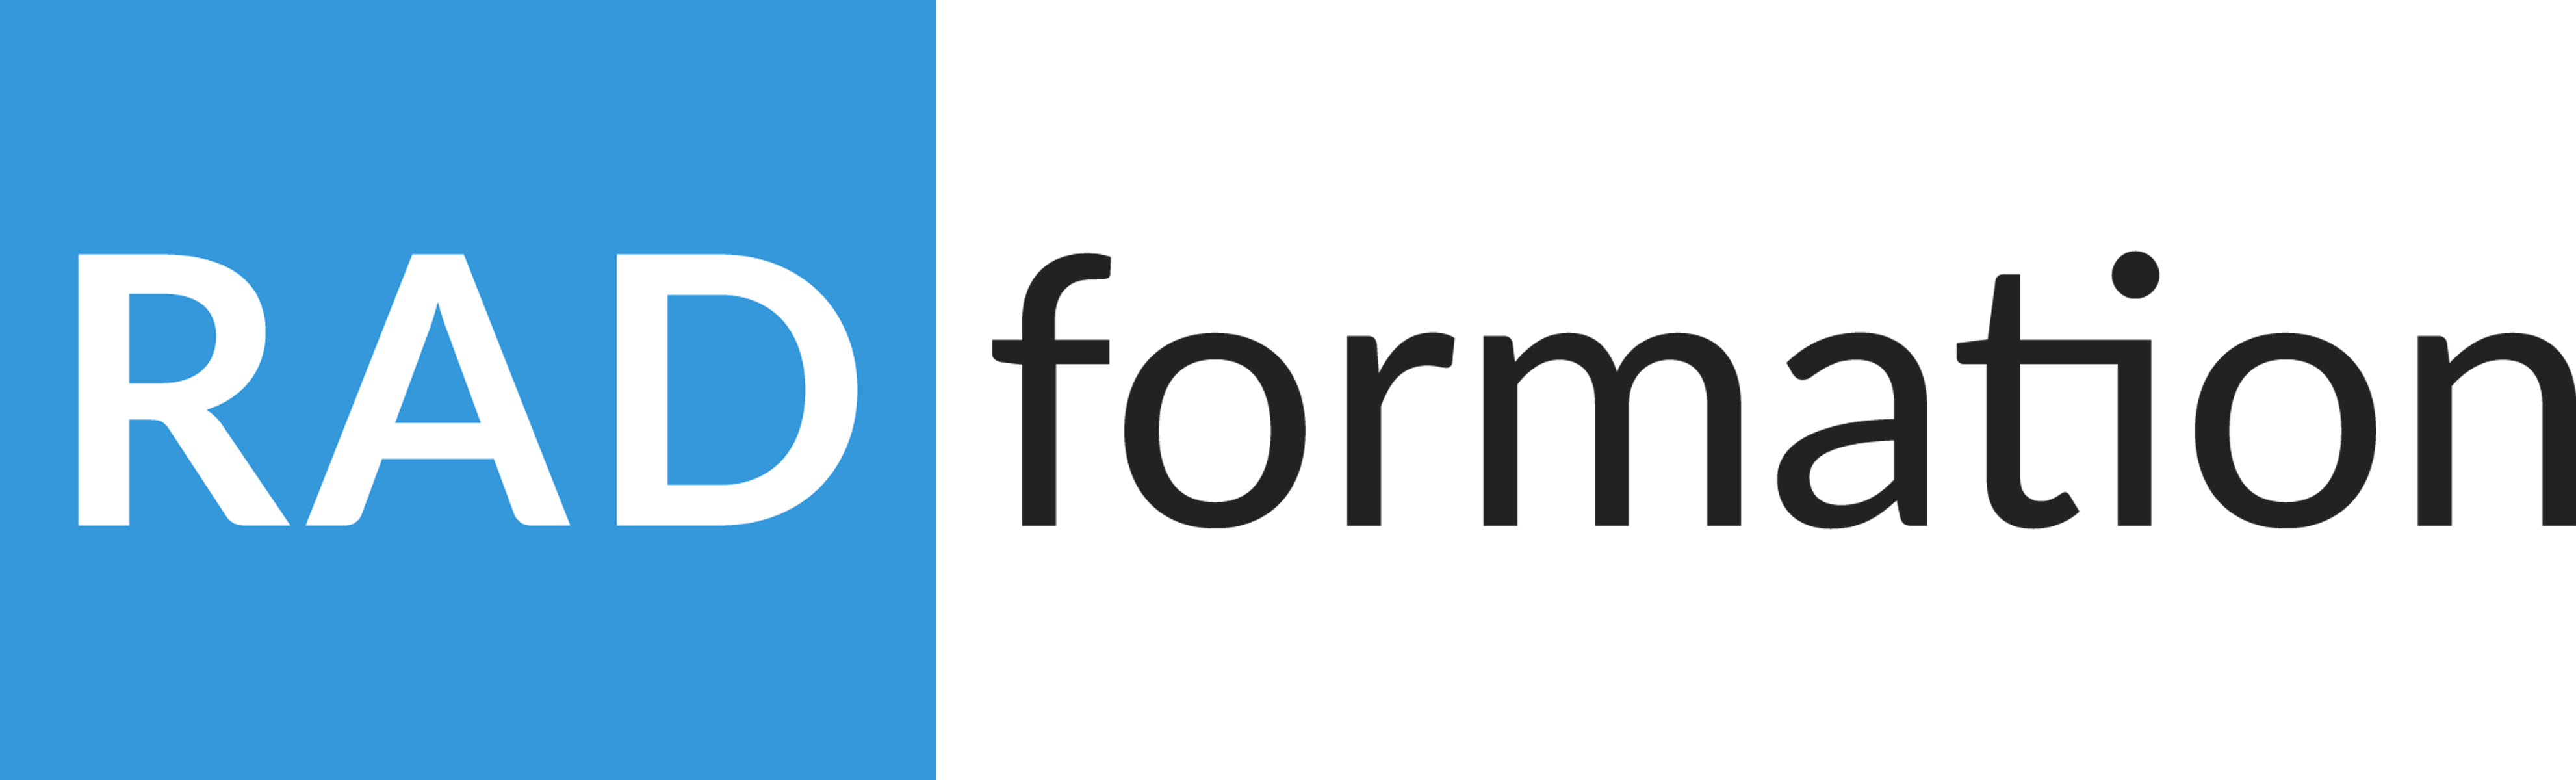 radformation-logo